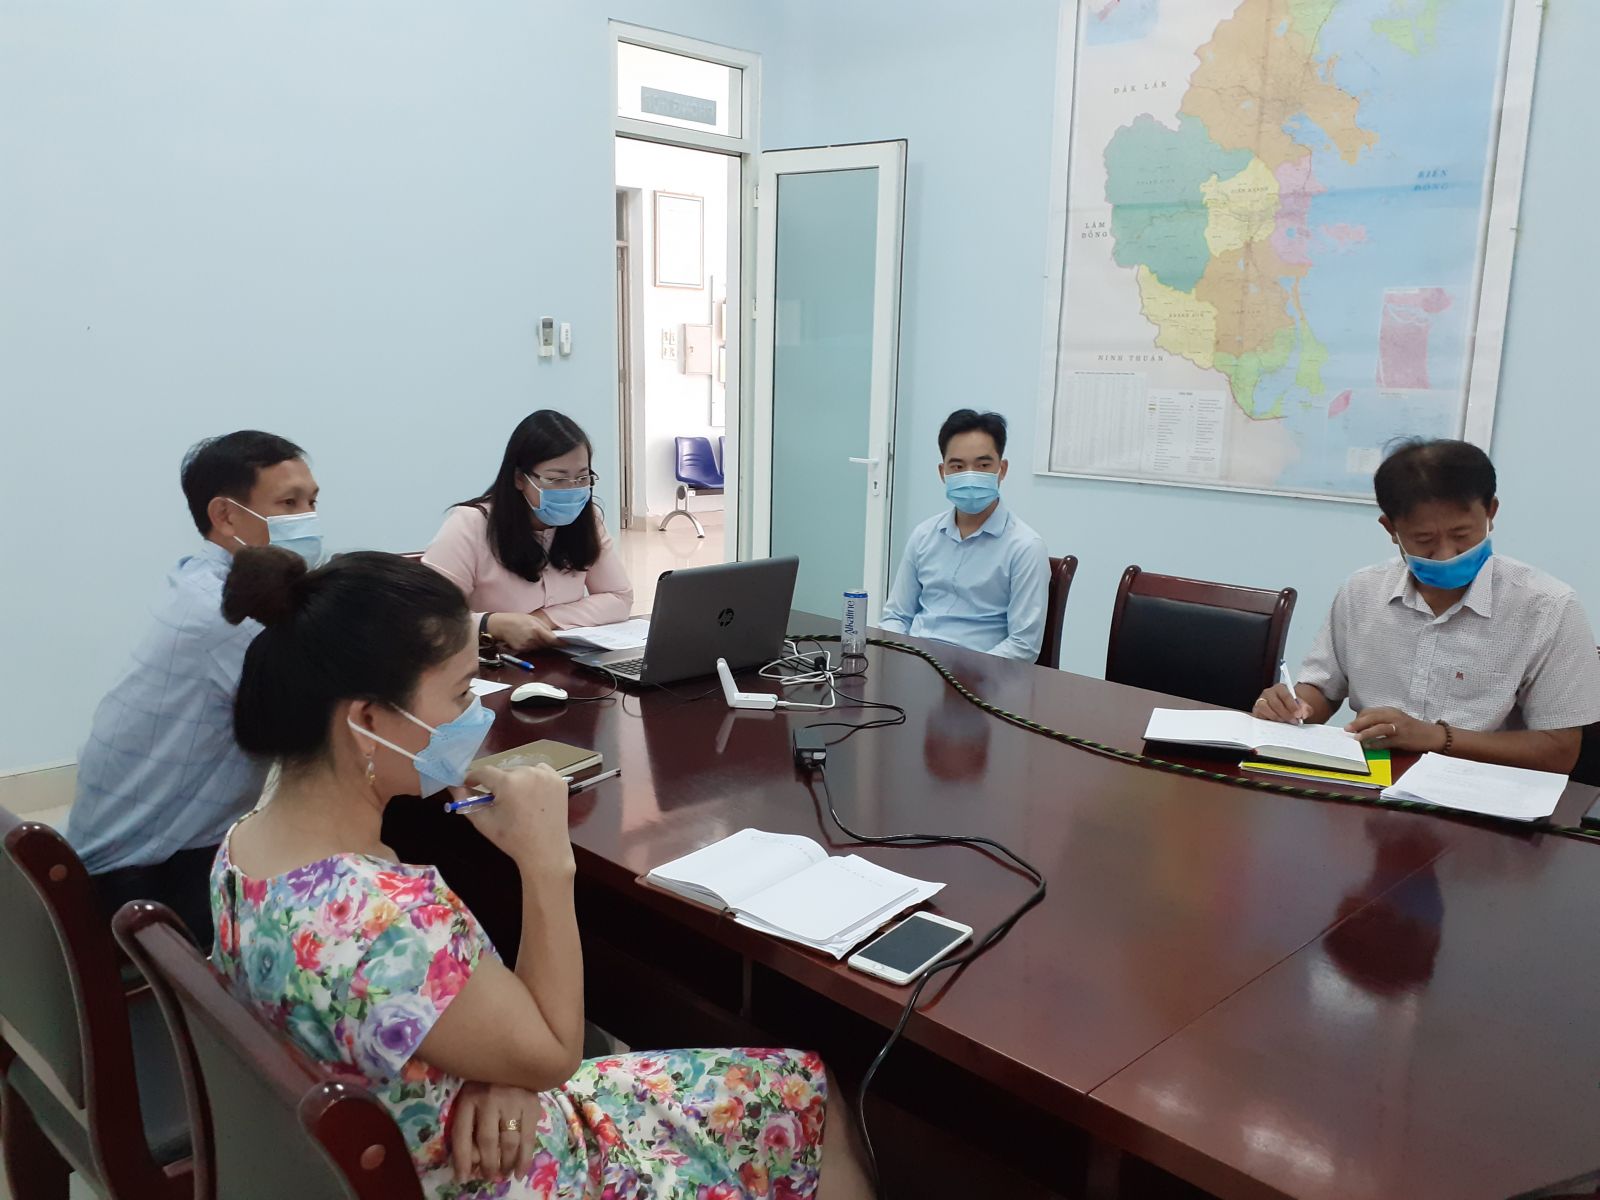 Департамент туризма провинции Кханьхоа сотрудничает с Bamboo Airways для подготовки программ стимулирования туризма.